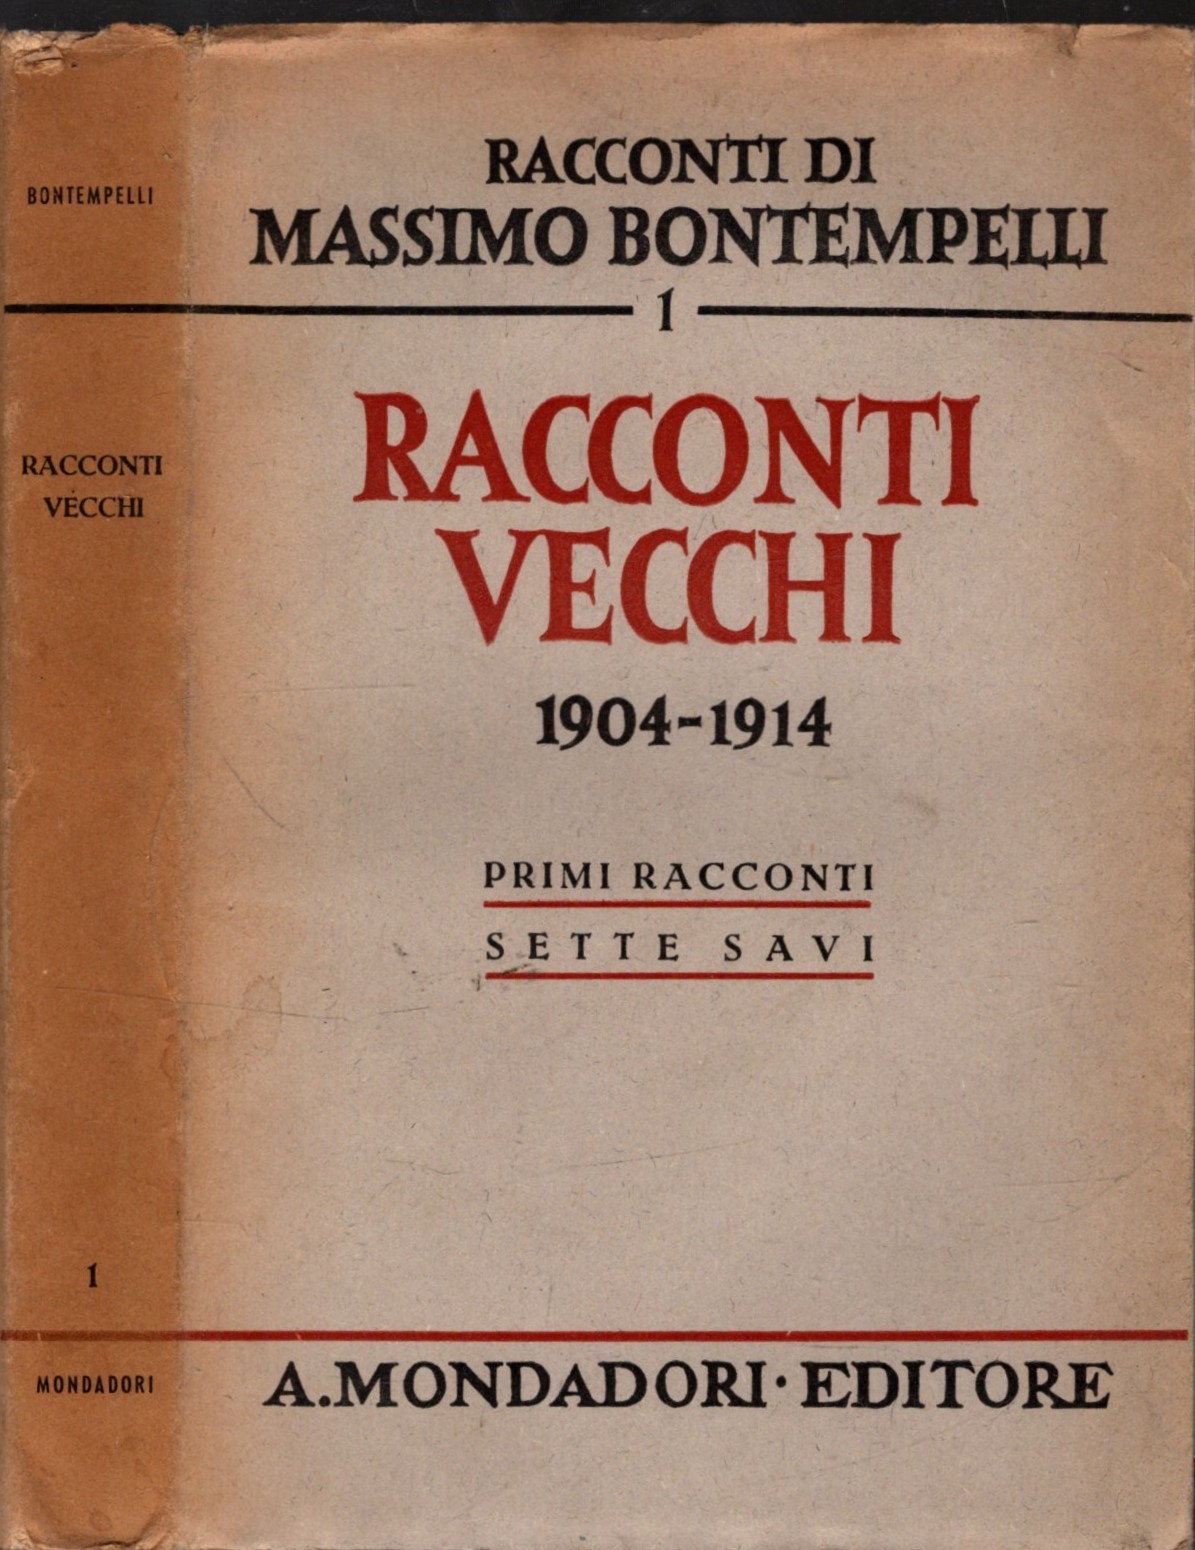 Racconti vecchi. (1904-1914). Primi racconti - Sette savi.